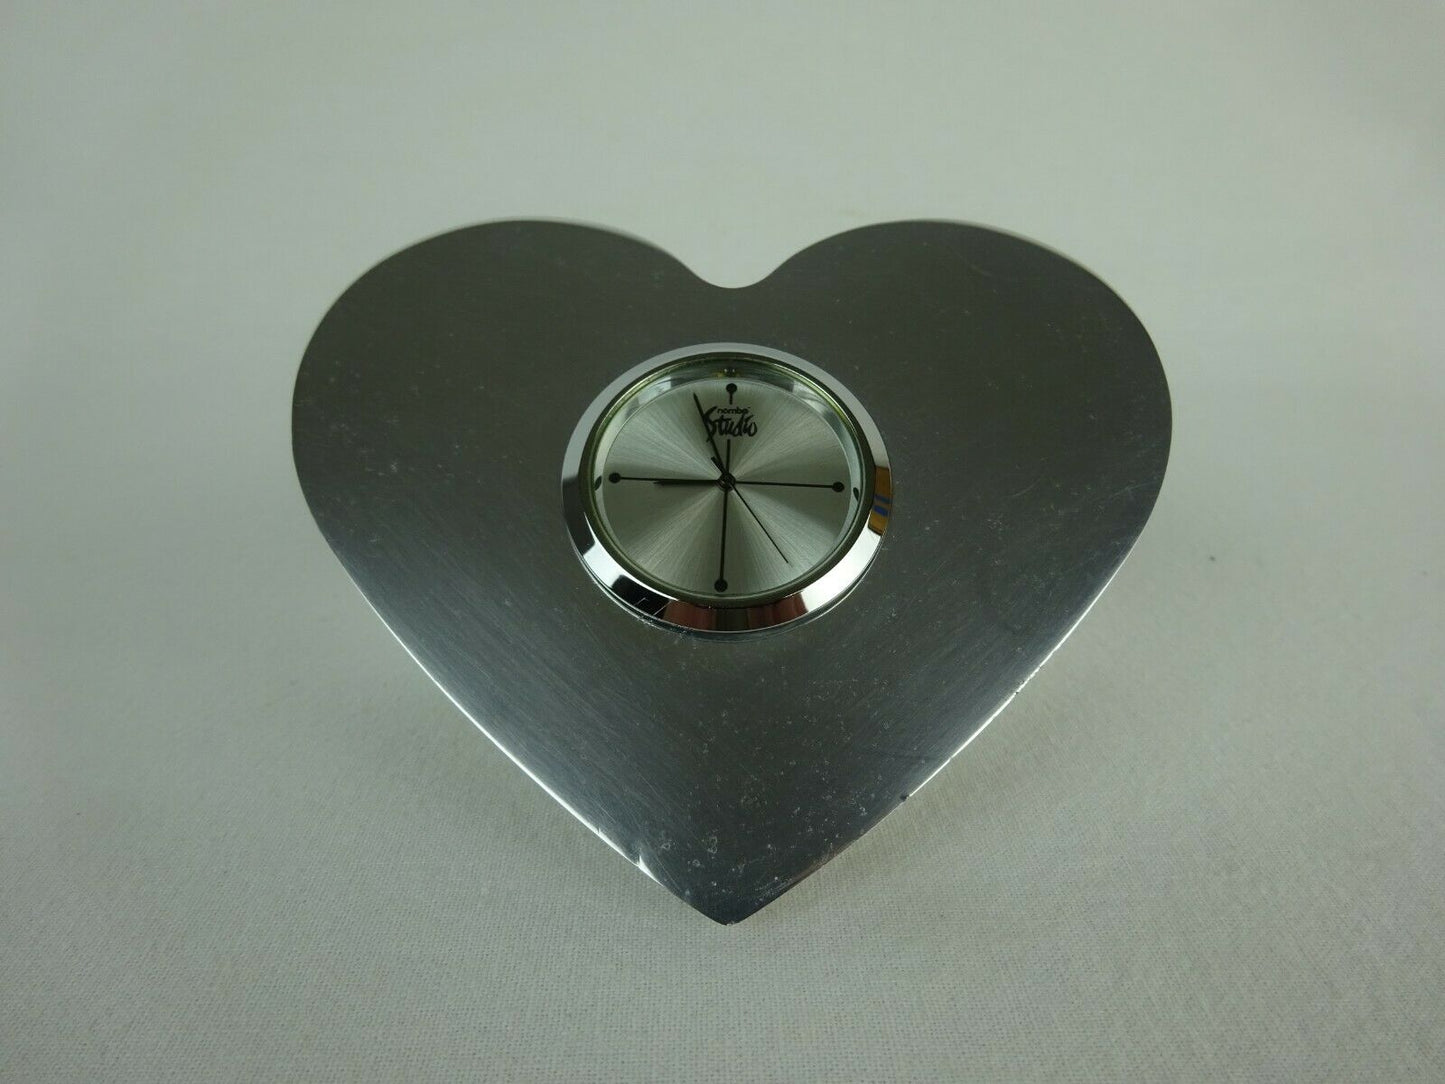 Nambe Heart Shaped Desk Clock